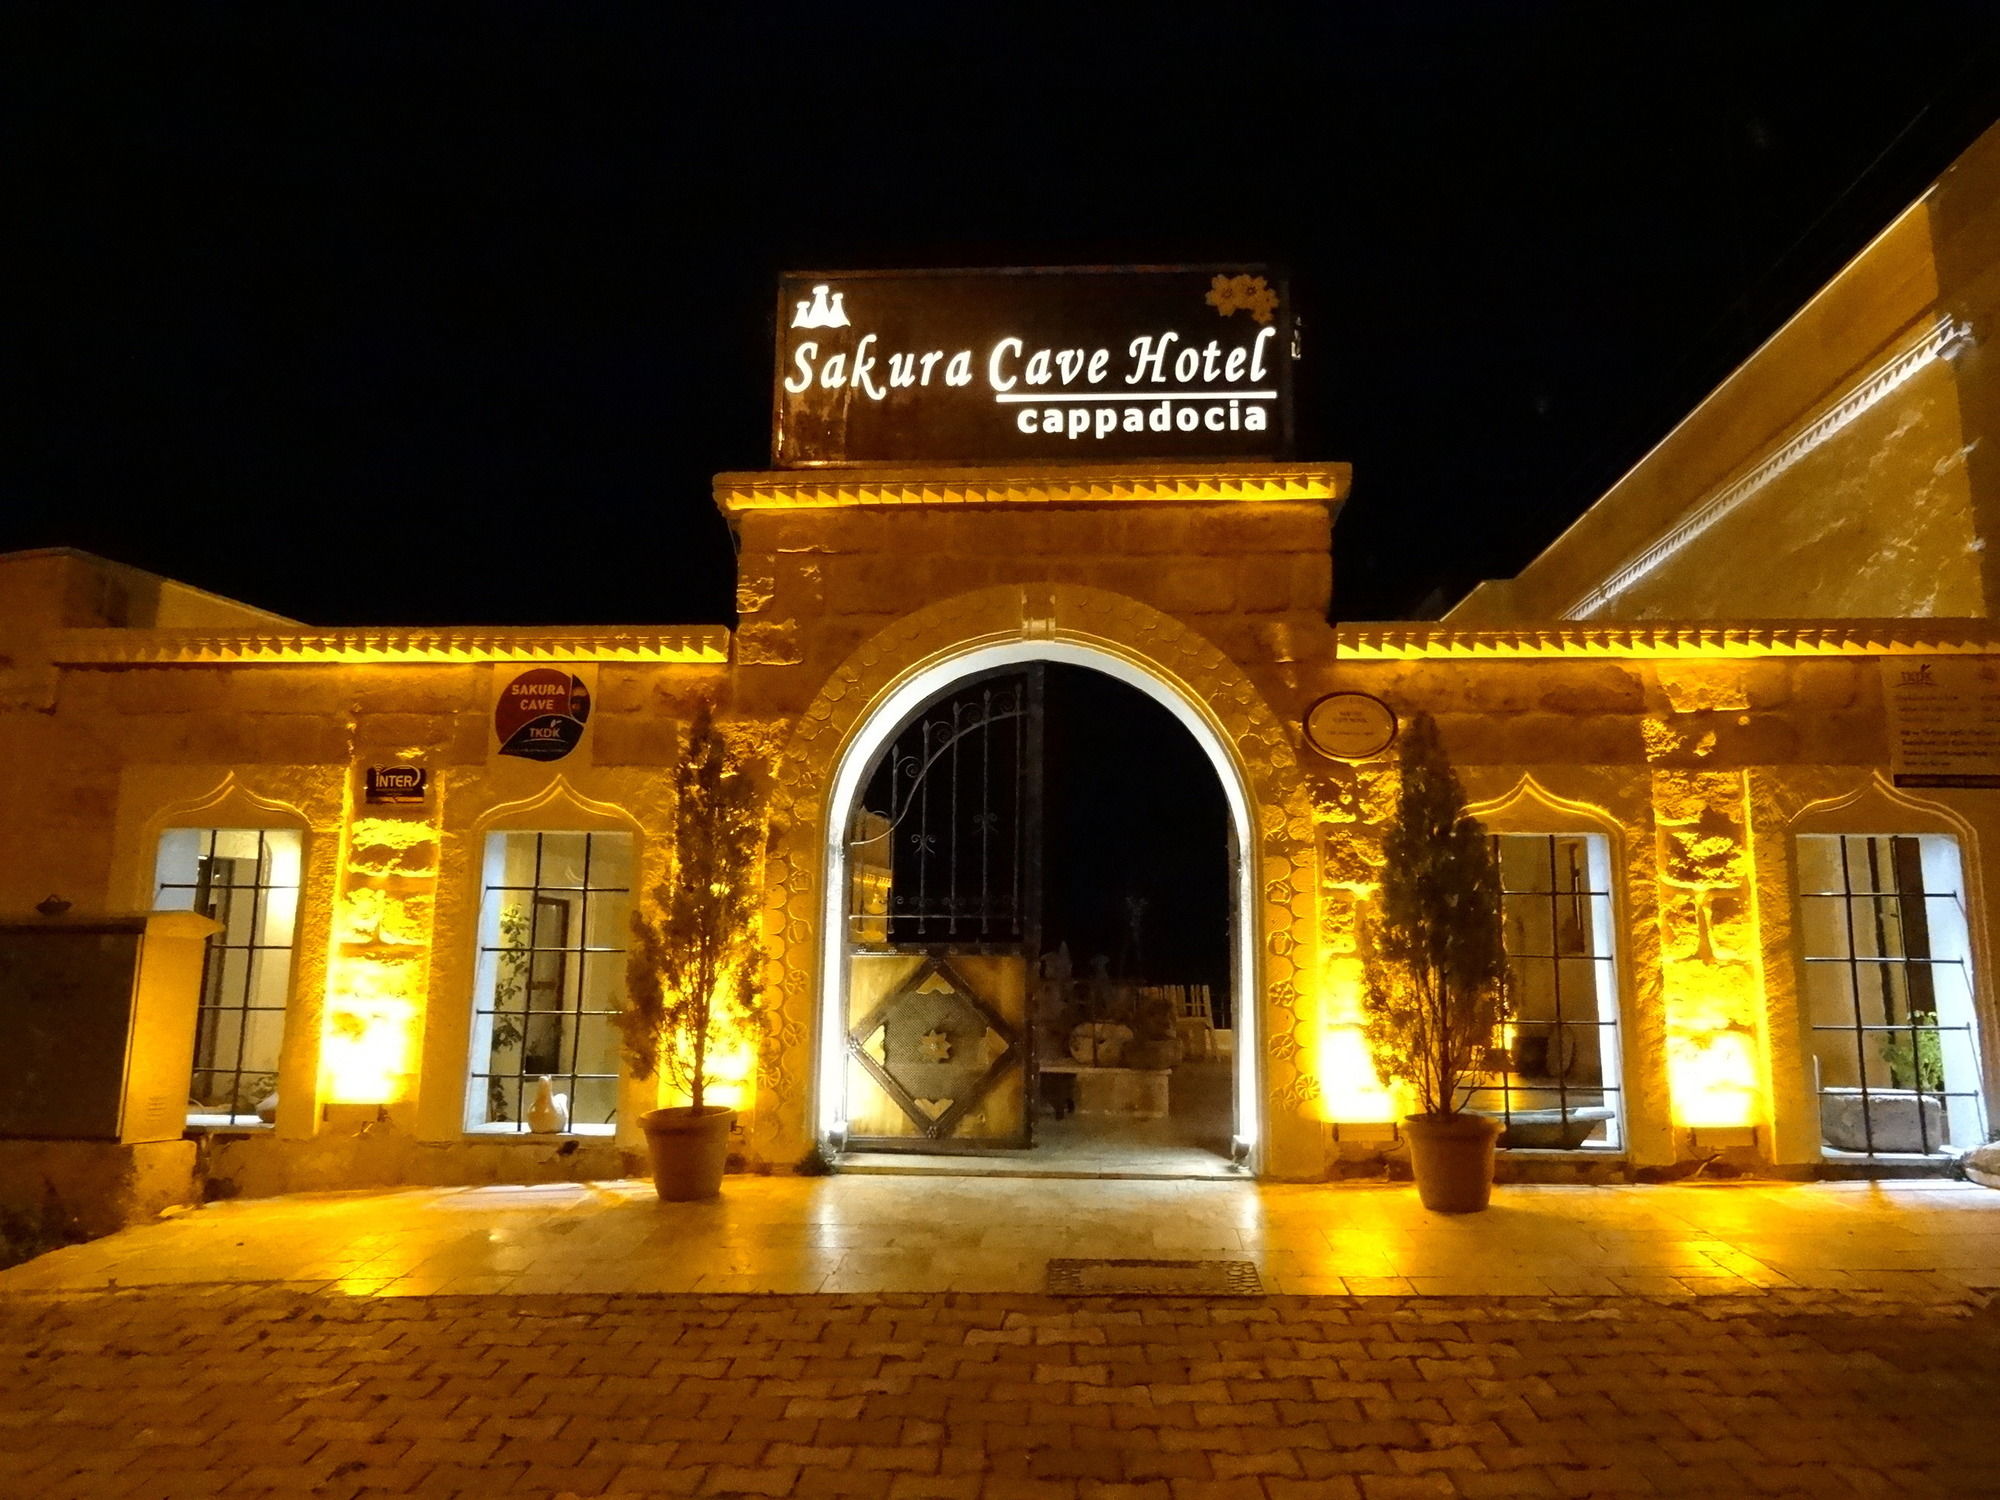 Emit Cave Hotel